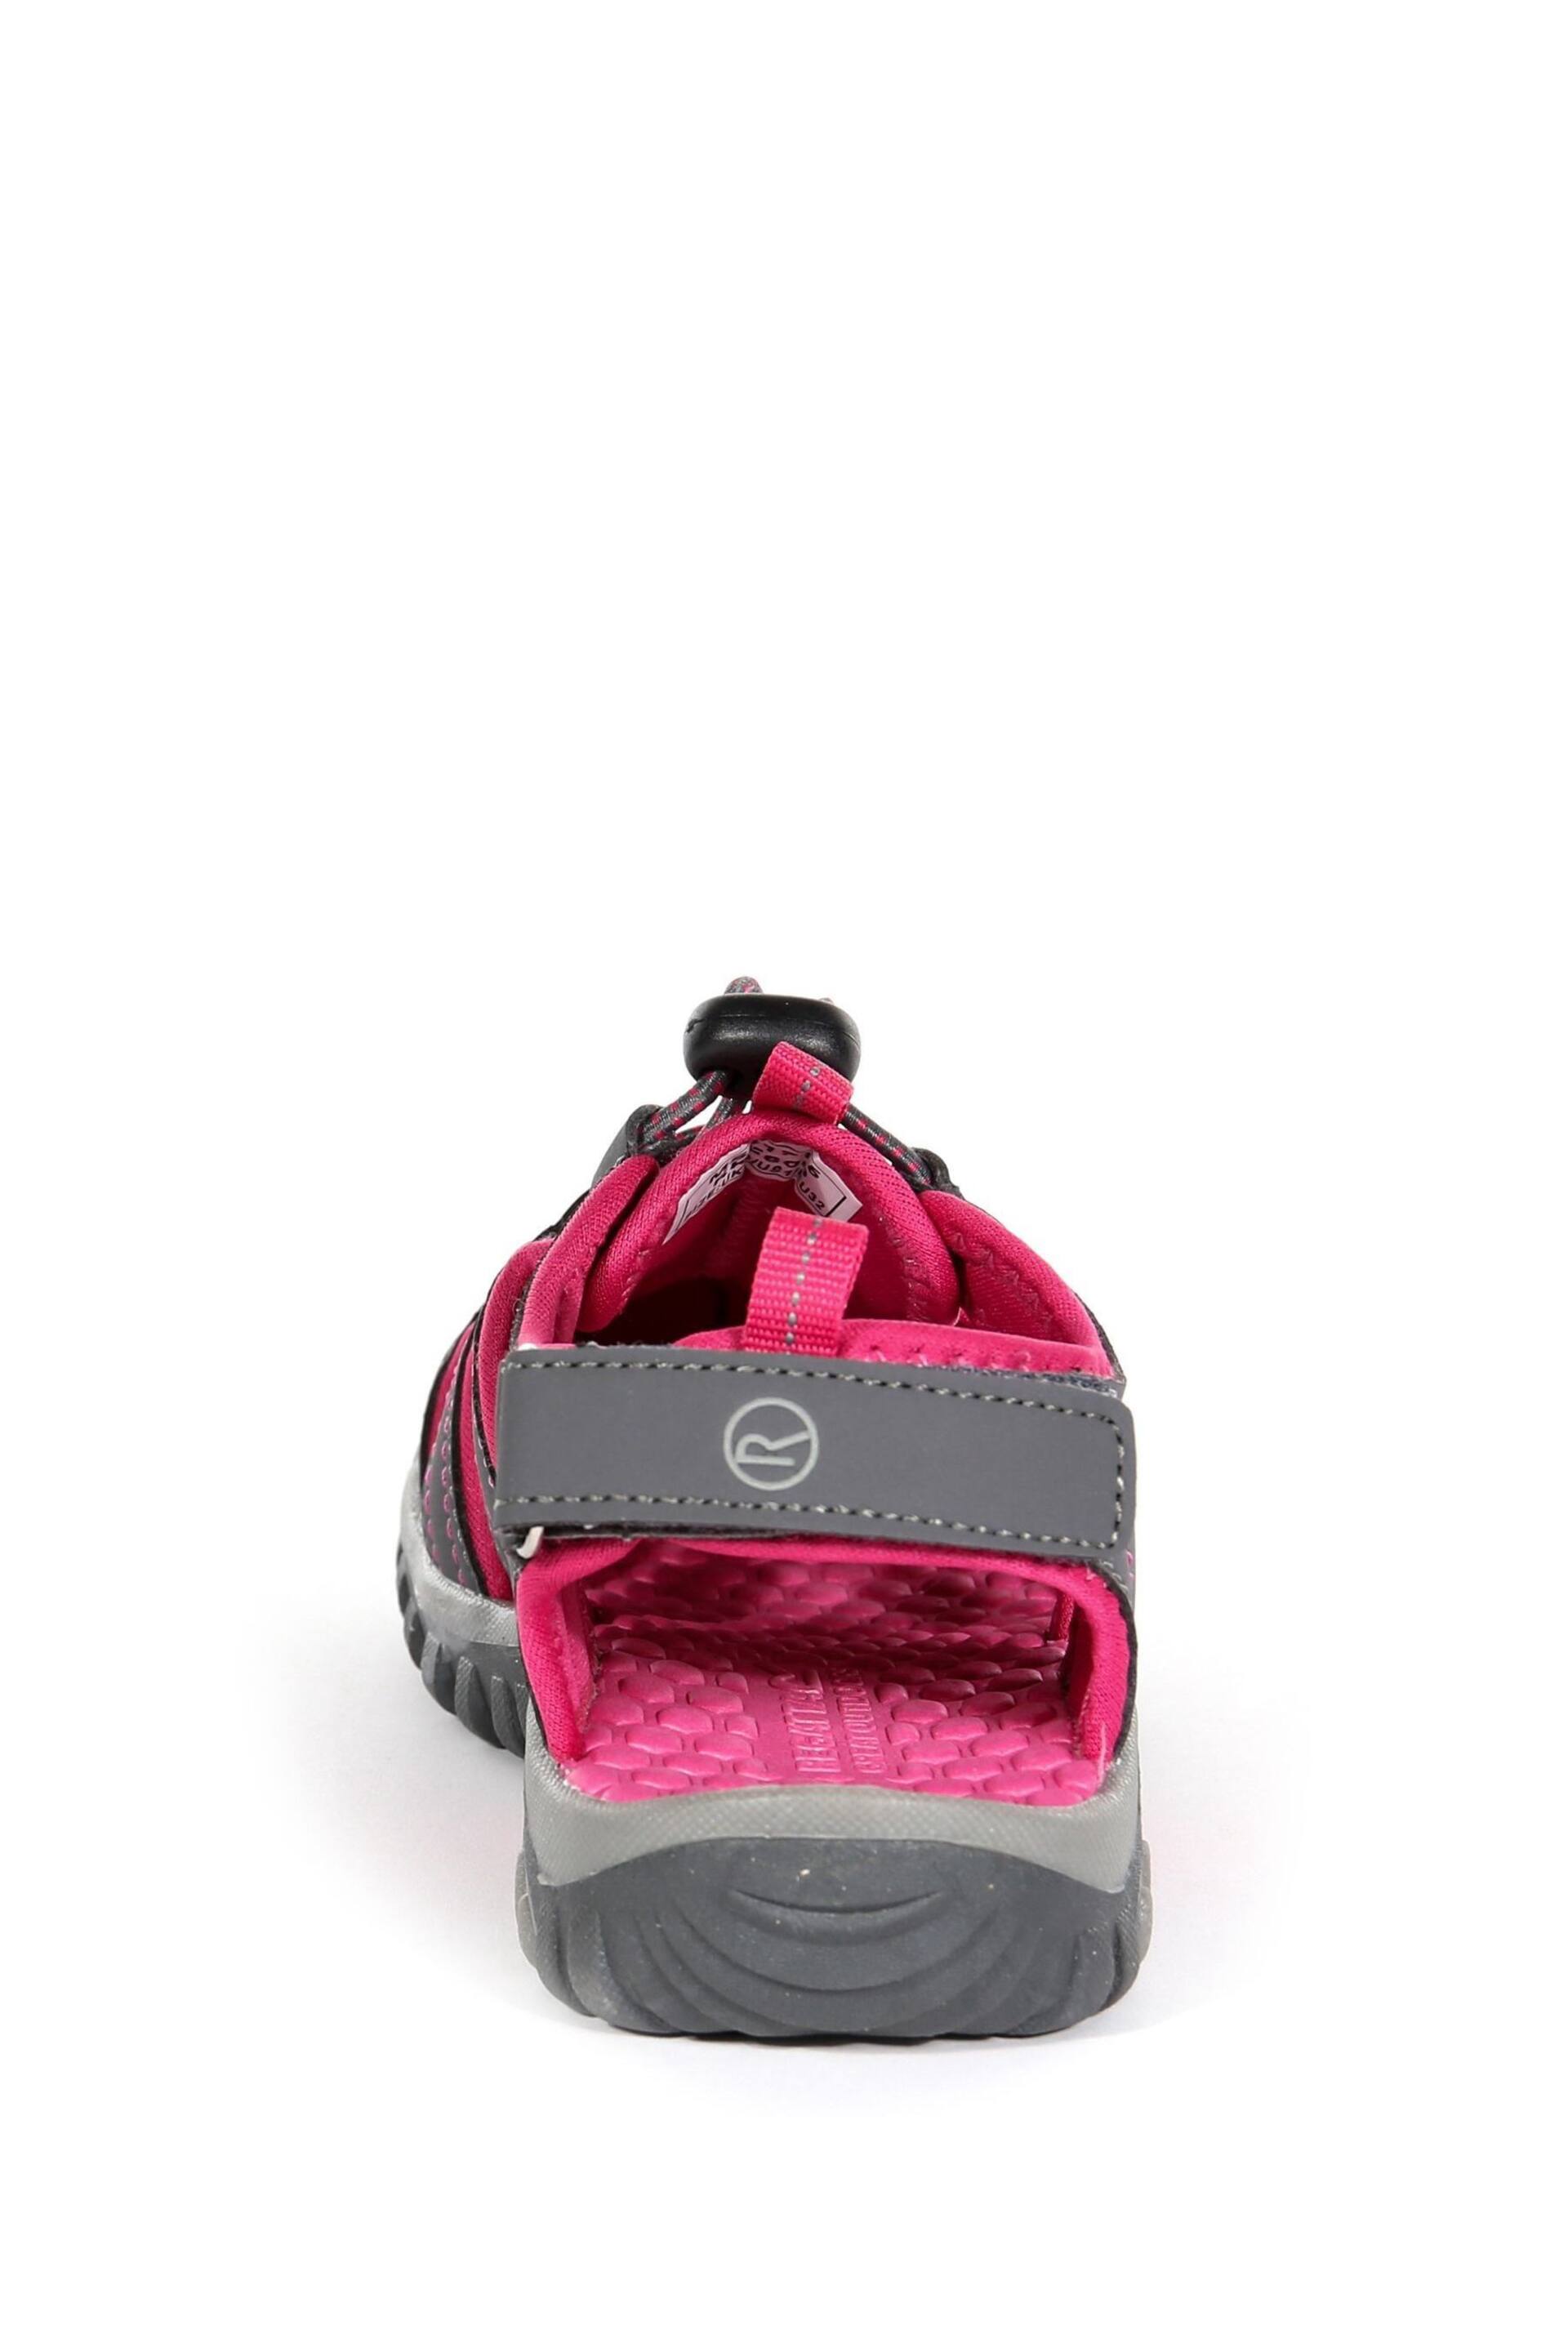 Regatta Grey Junior Westshore Sandals - Image 4 of 6